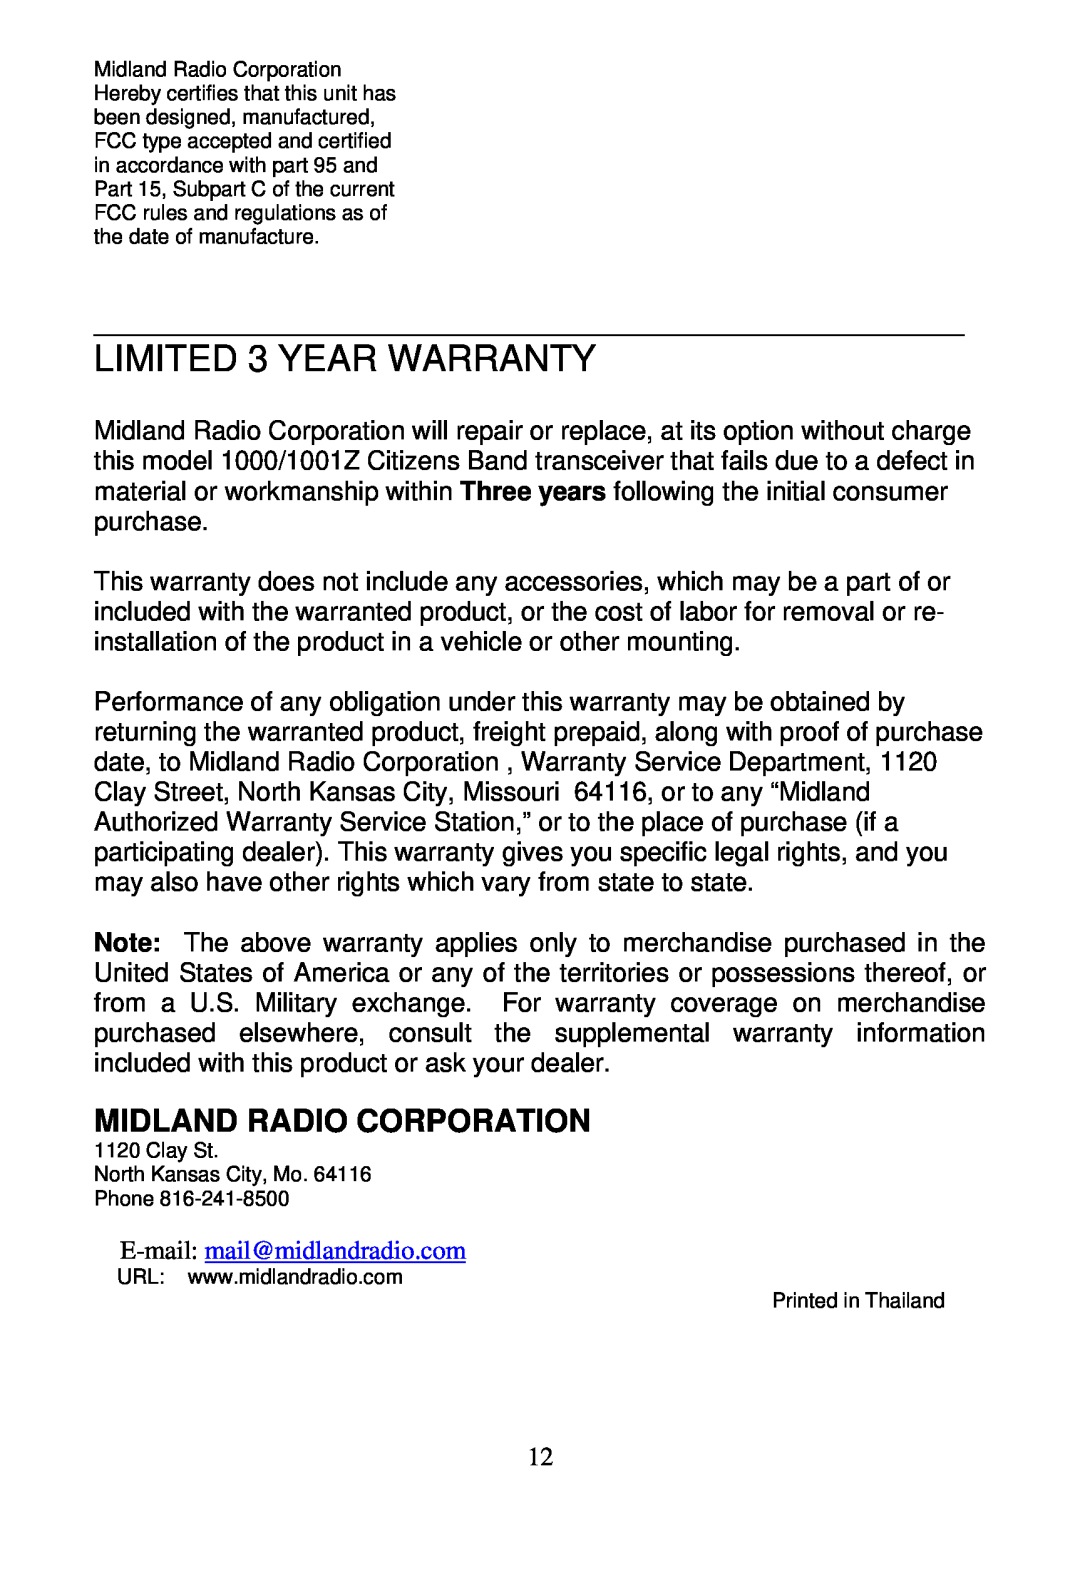 Midland Radio 1001z manual LIMITED 3 YEAR WARRANTY, Midland Radio Corporation 